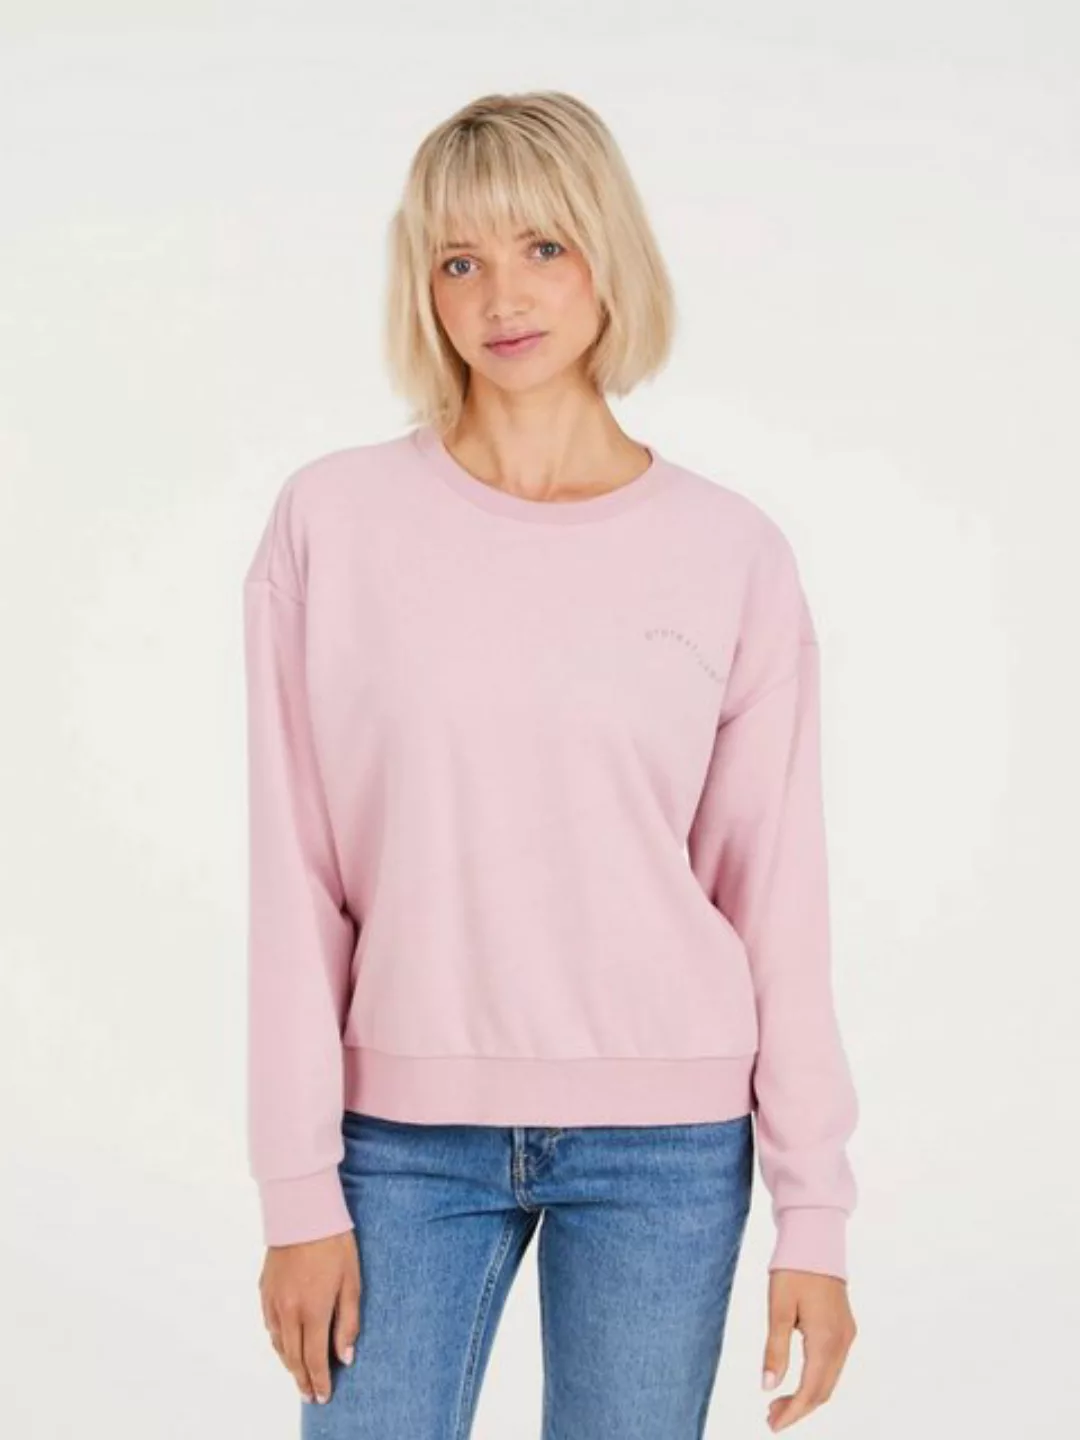 Protest Sweatshirt Protest Sweatshirt Prtoriana Pillow Pink Rosa L günstig online kaufen